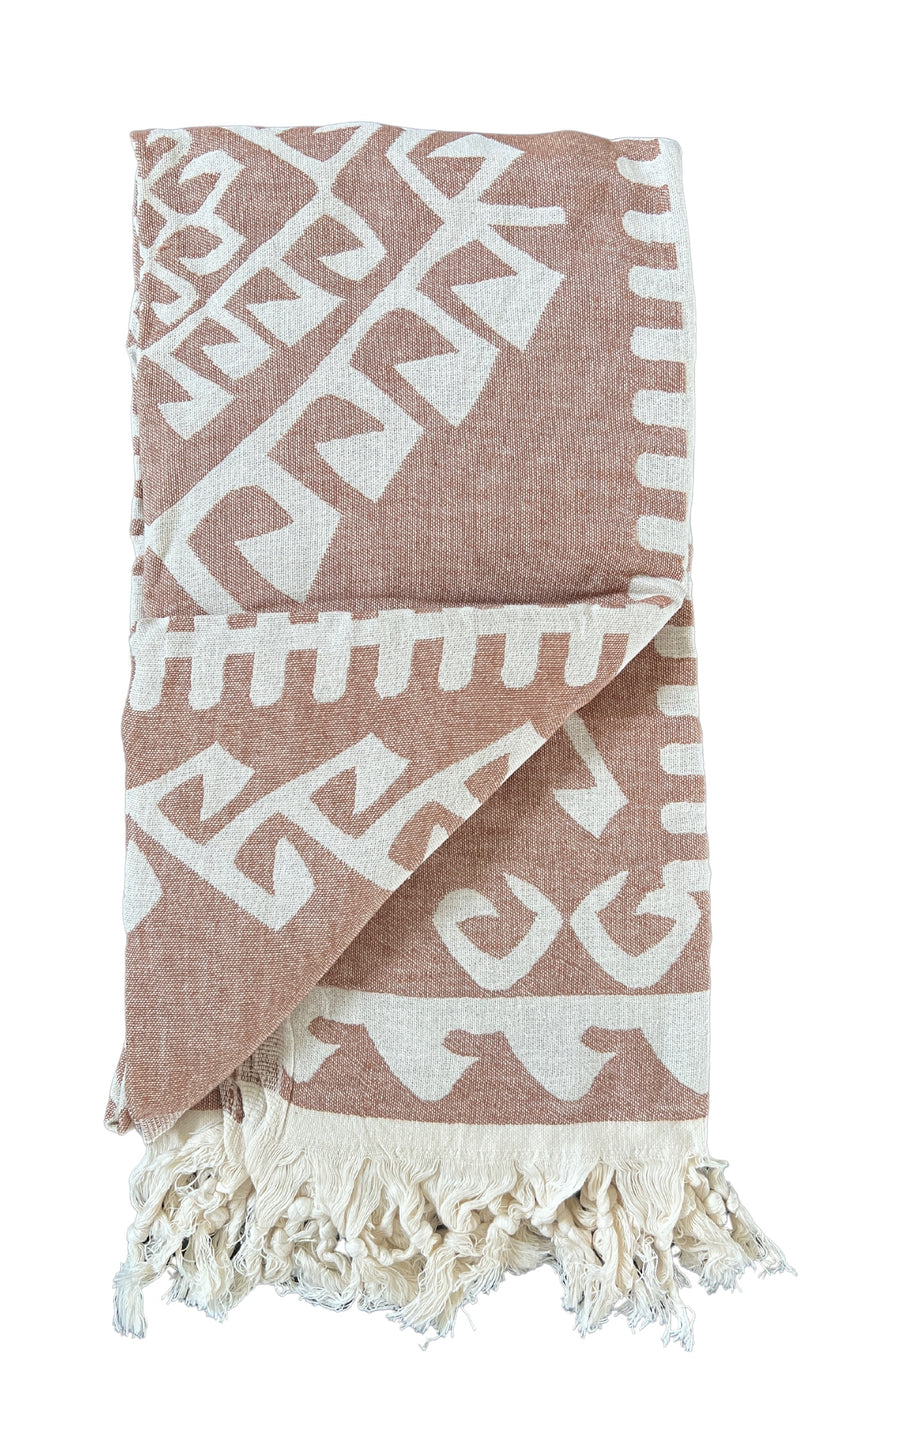 Brown Aztec Turkish Towel